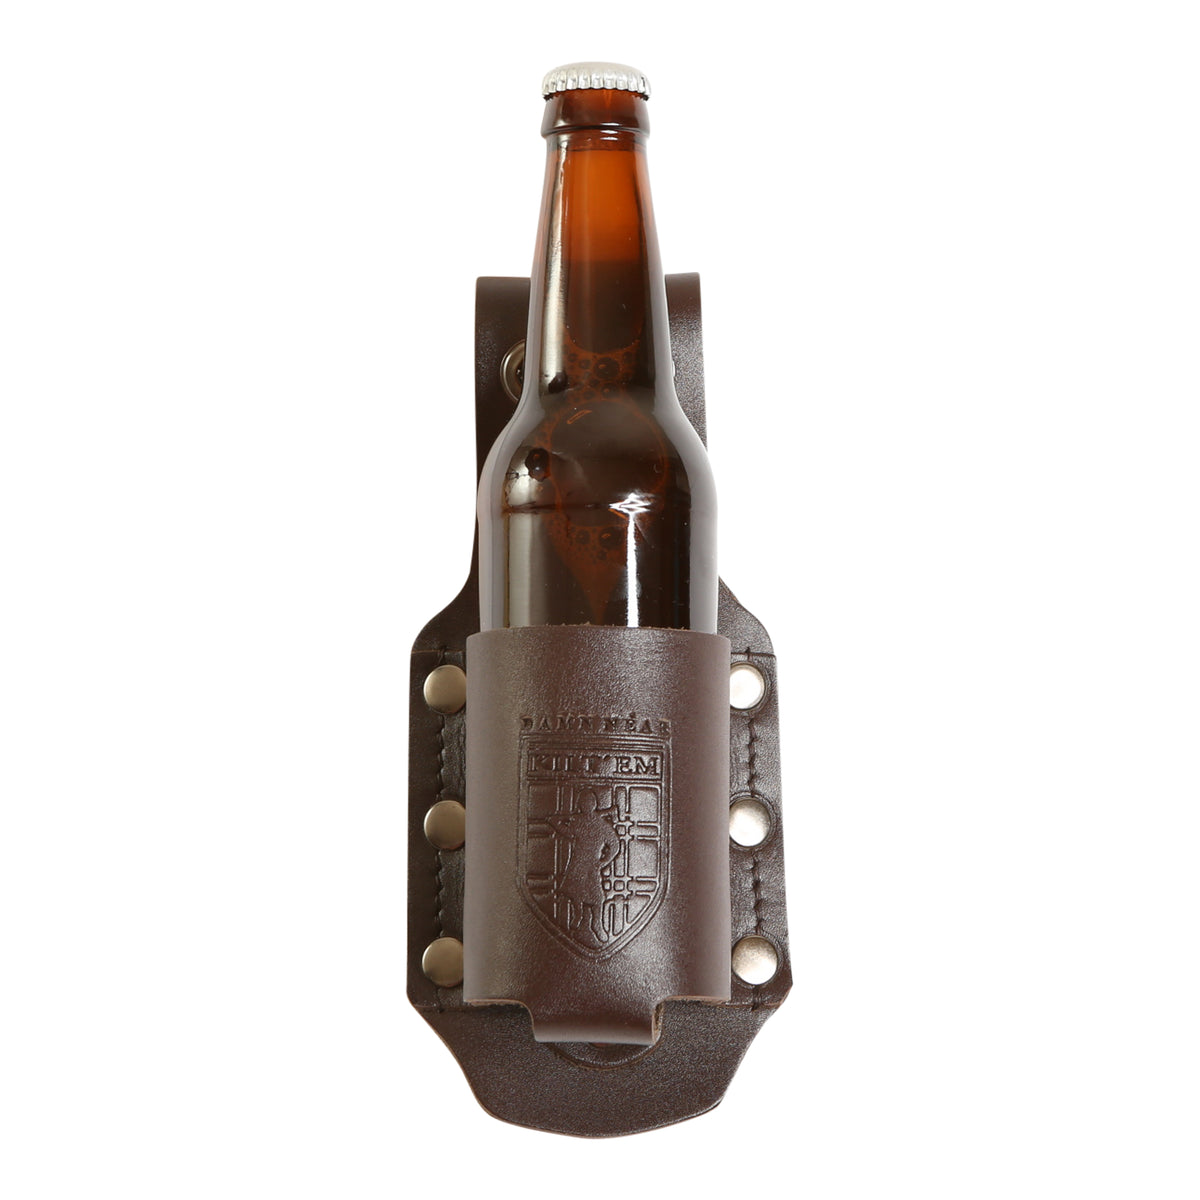 12 oz Standard Bottle Holder - Brown Leather Cover